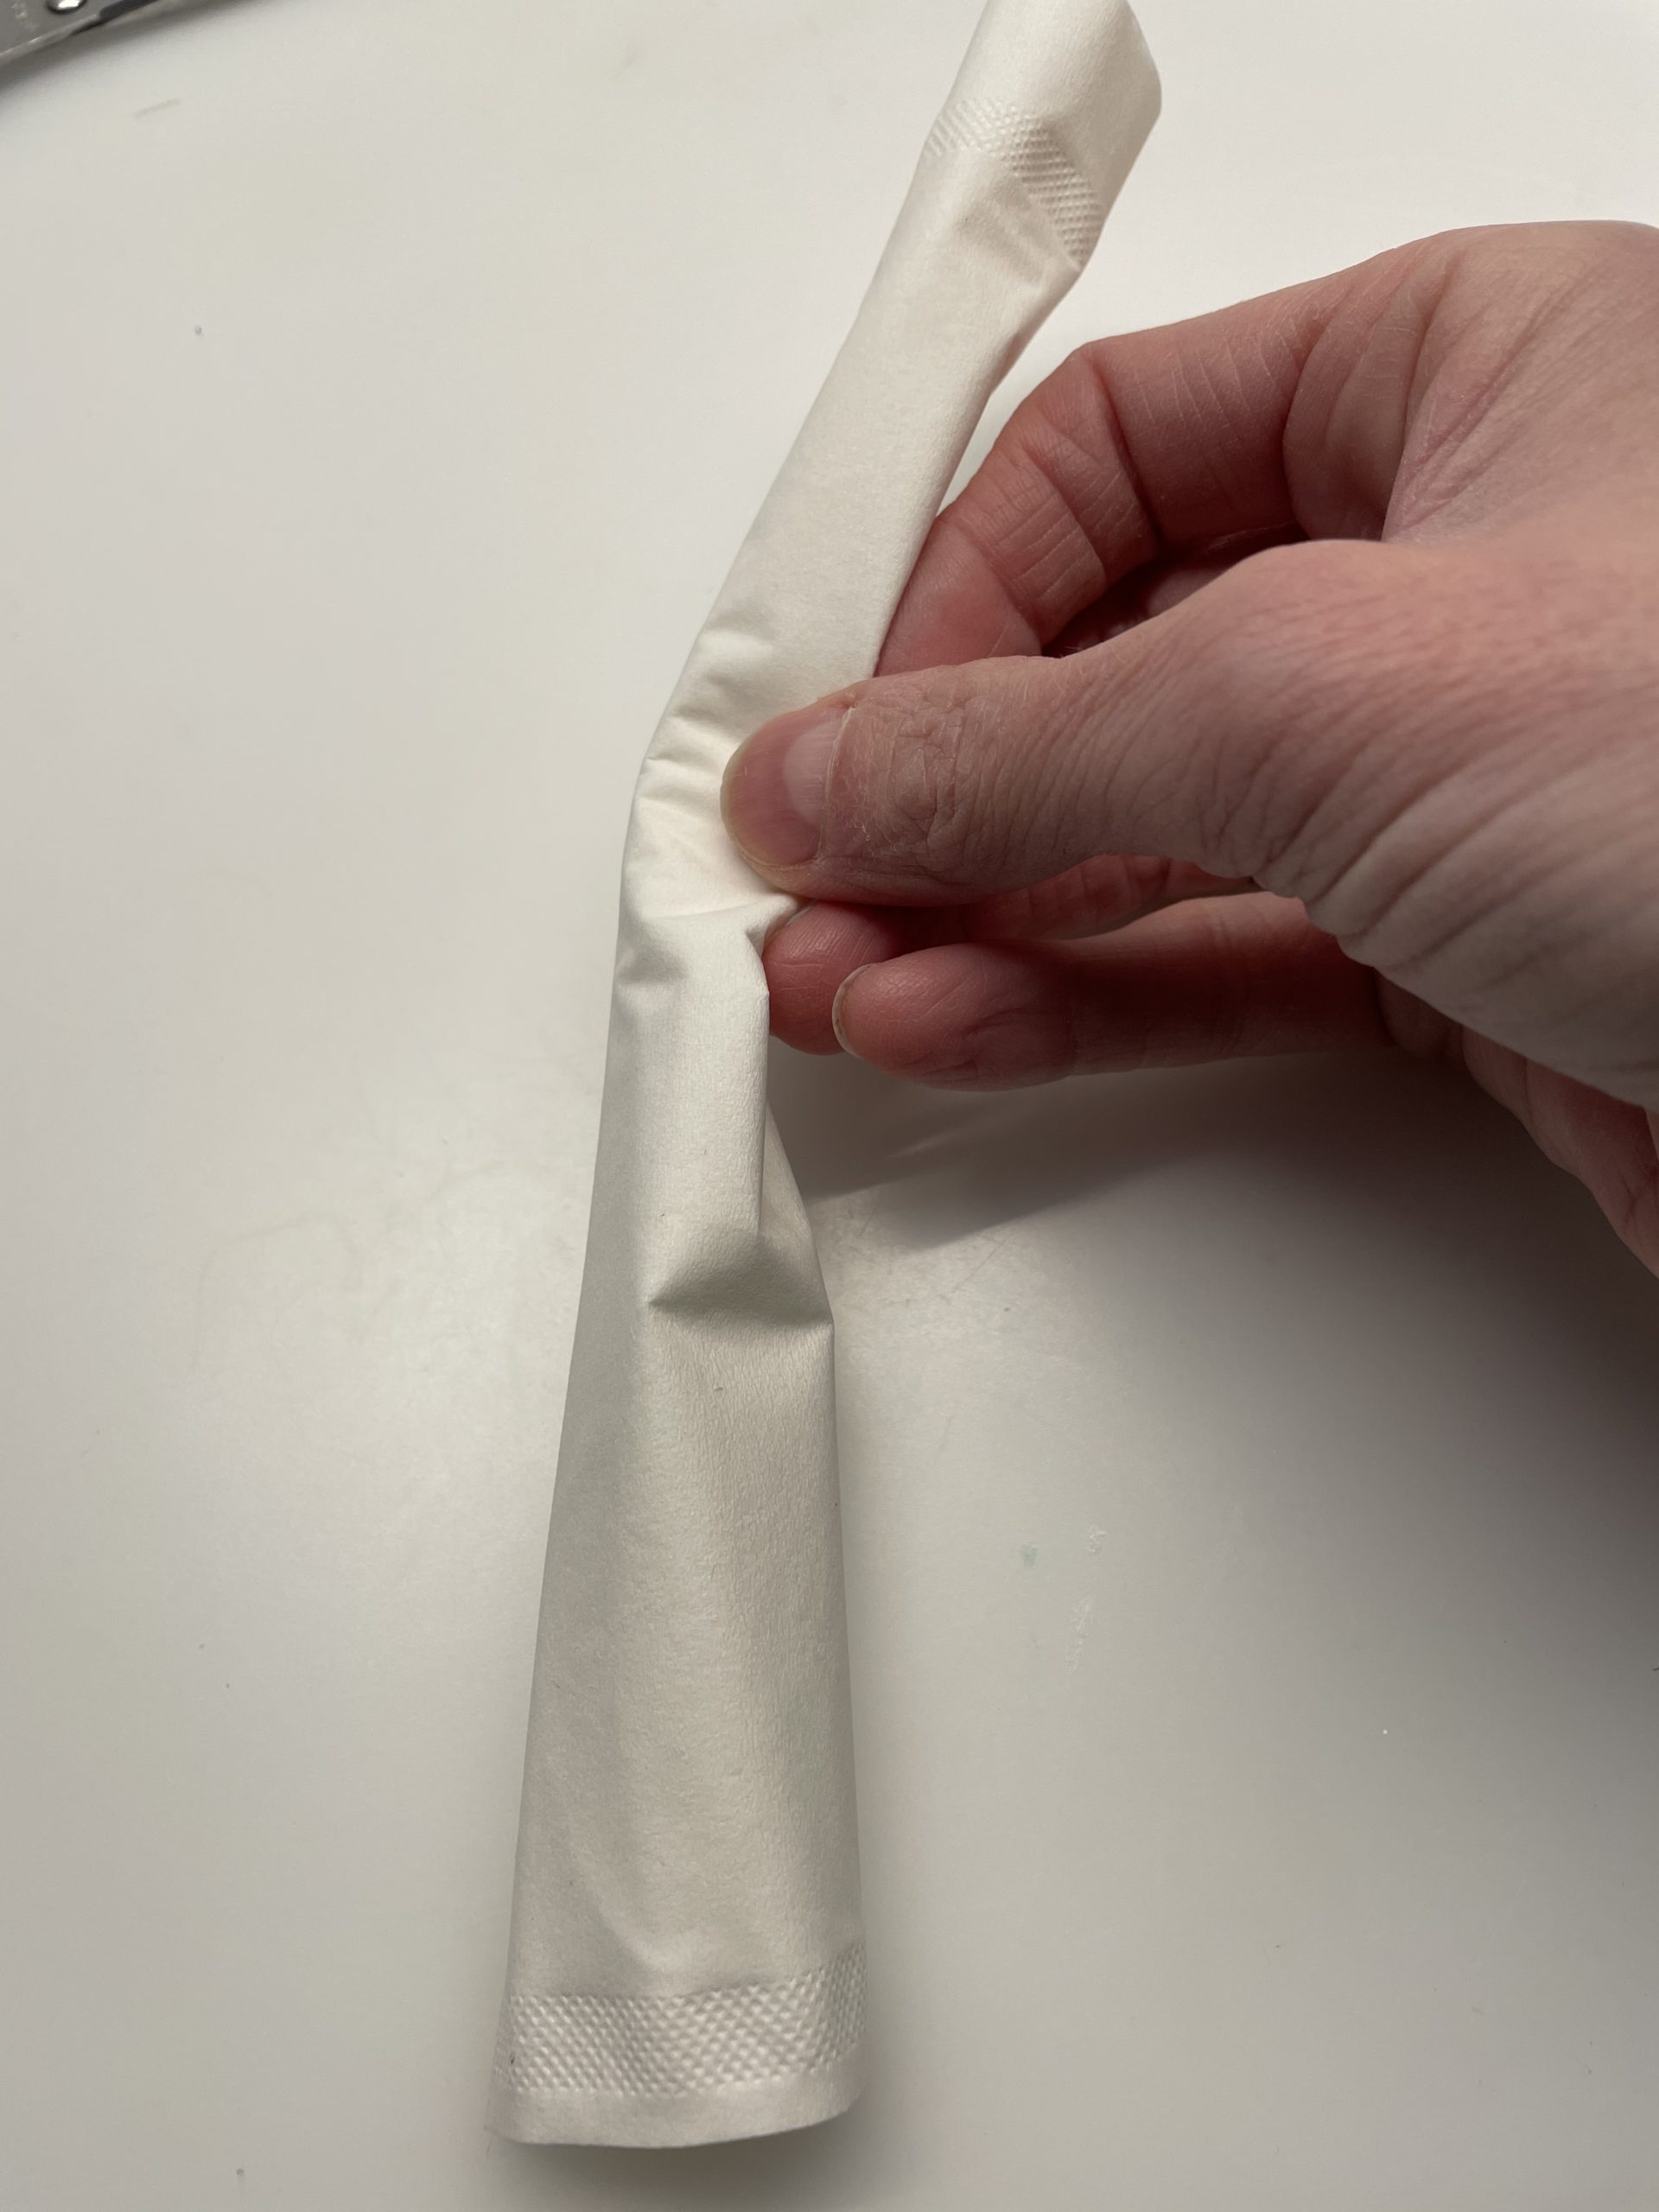 Bild zum Schritt 13 für das Bastel- und DIY-Abenteuer für Kinder: 'Rollt das Taschentuch von der langen Seite ausgehend zusammen.'